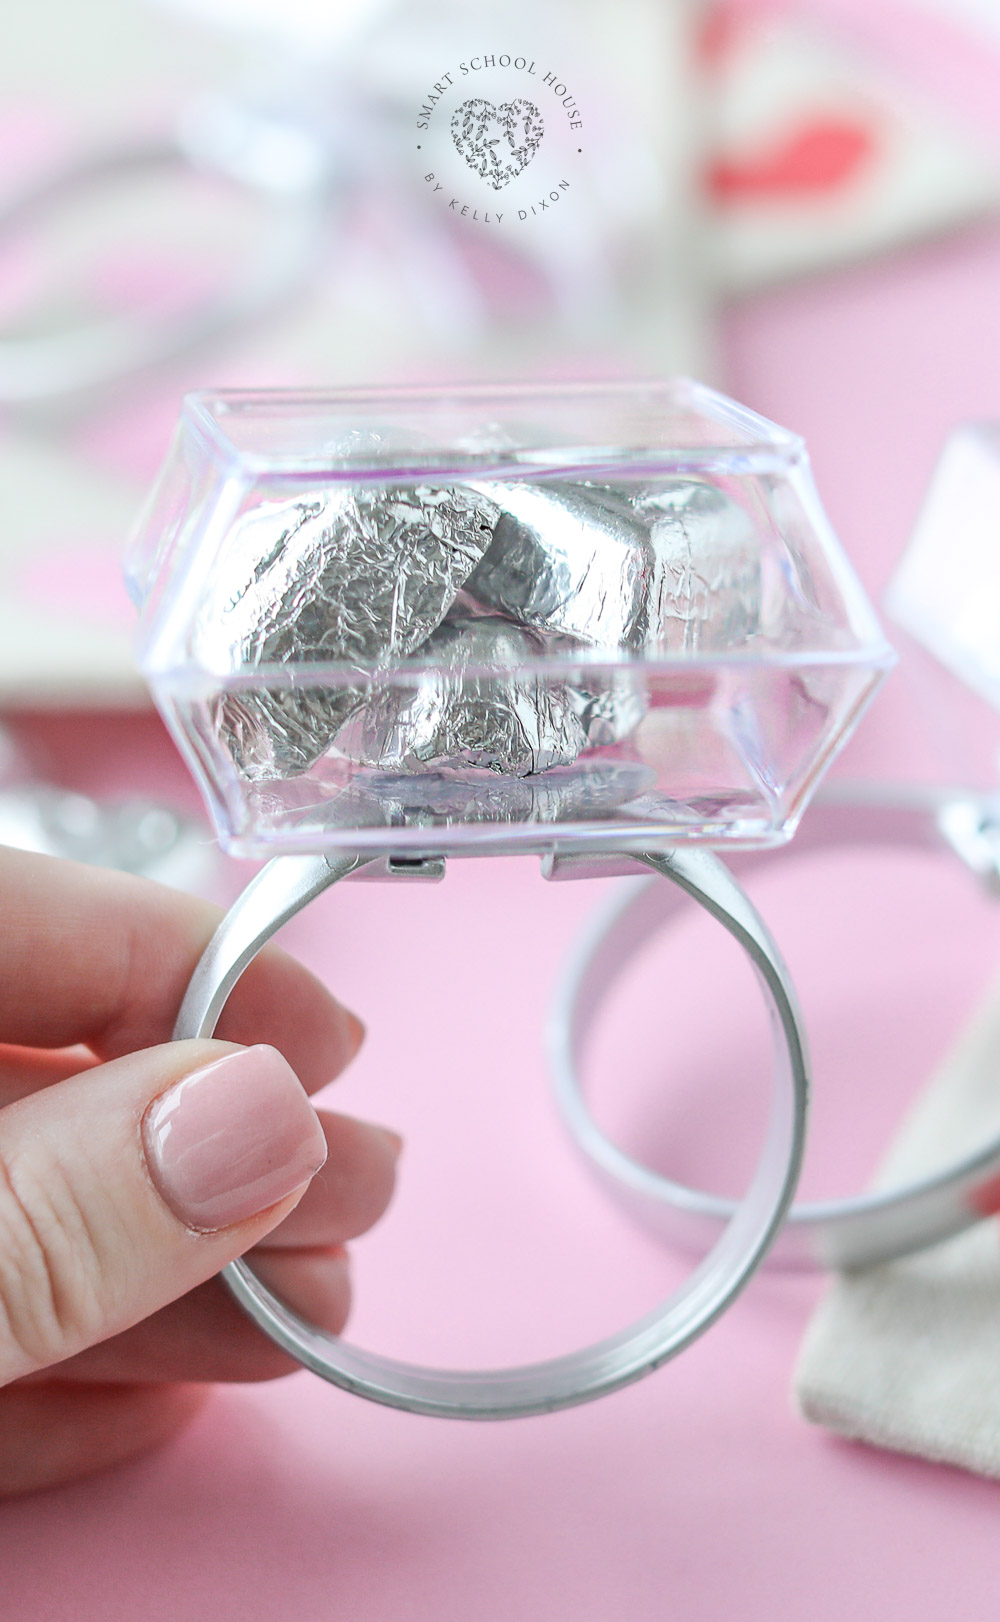 Tento valentínsky prsteň naozaj prináša radosť!  Tento veľký a rozkošný prsteň v tvare diamantu je vyrobený z plastu a naplnený čokoládami v tvare srdca.